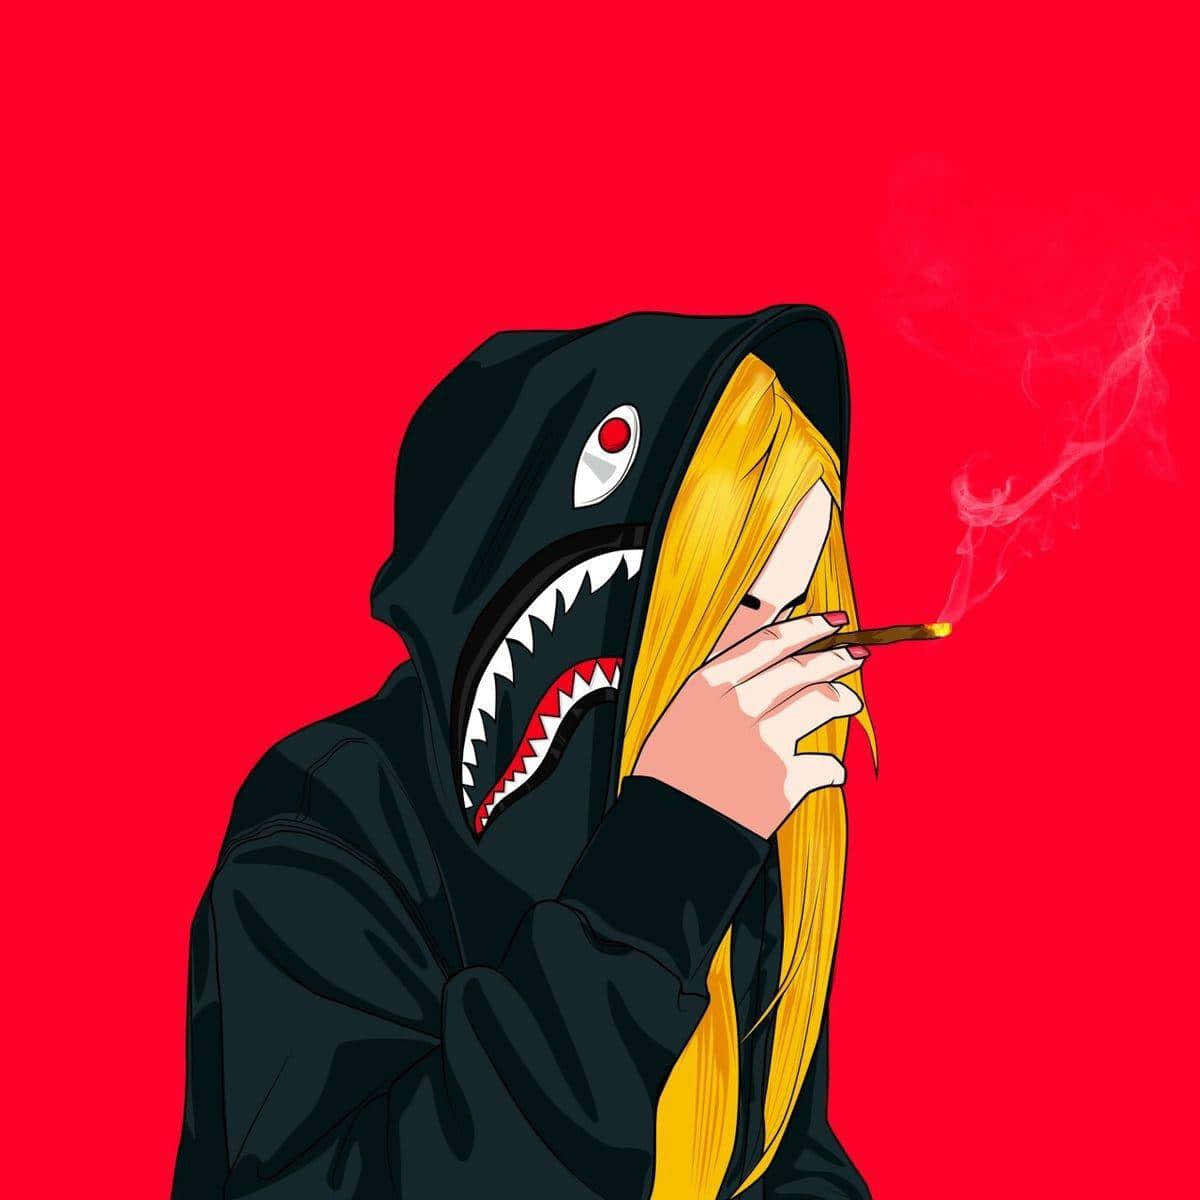 En pige i en sort hættetrøje, der ryger en cigarette. Wallpaper